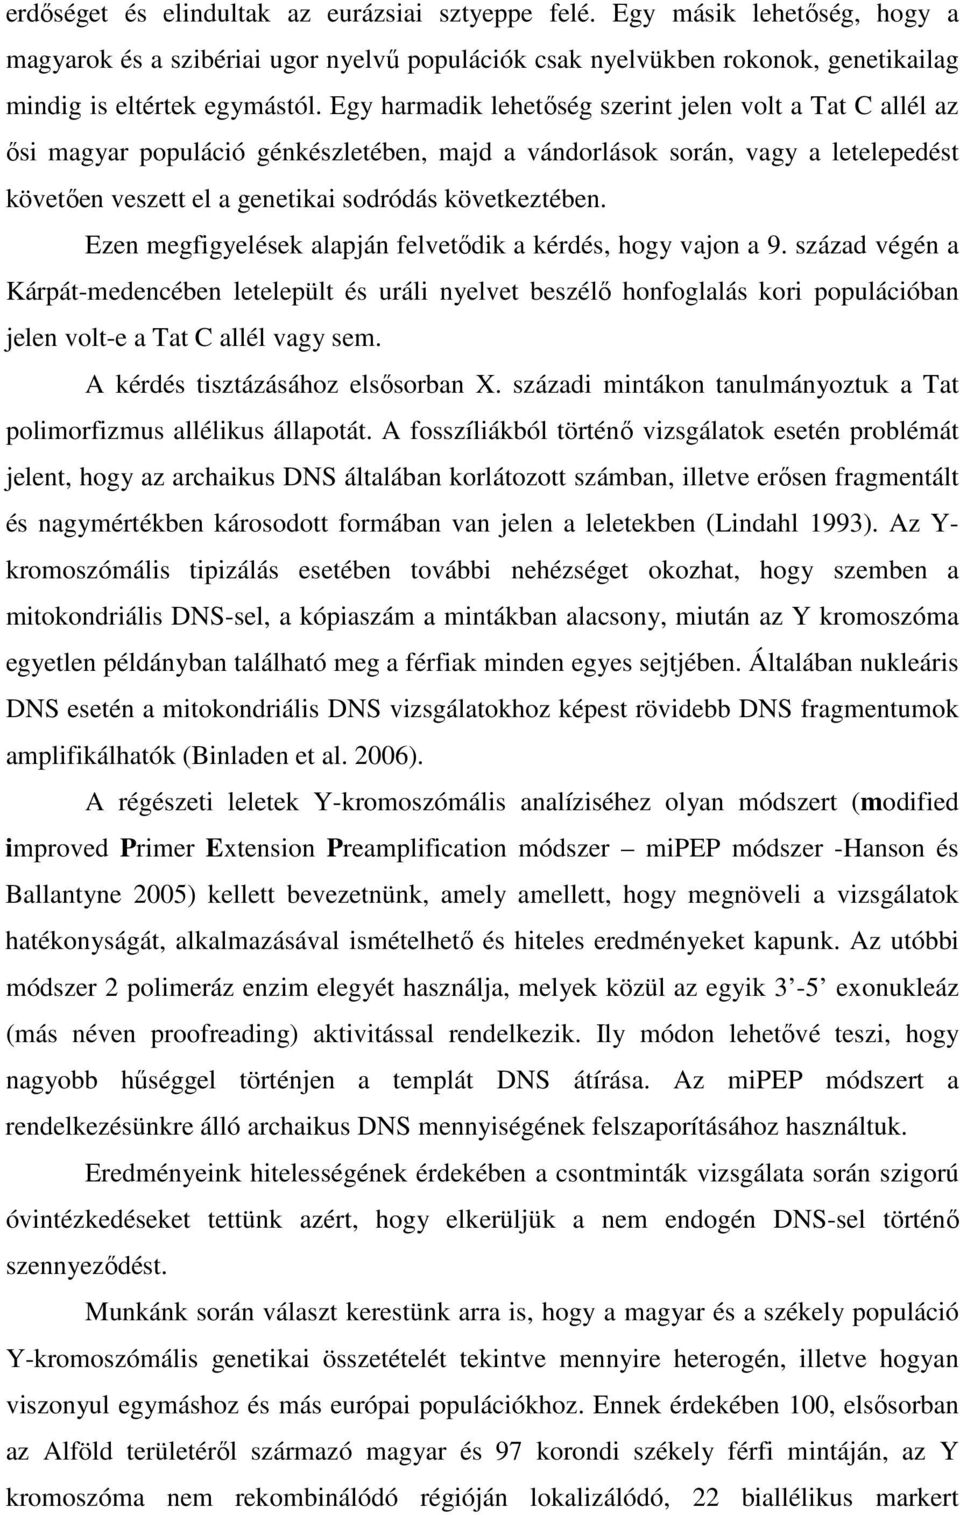 Ezen megfigyelések alapján felvetıdik a kérdés, hogy vajon a 9. század végén a Kárpát-medencében letelepült és uráli nyelvet beszélı honfoglalás kori populációban jelen volt-e a Tat C allél vagy sem.